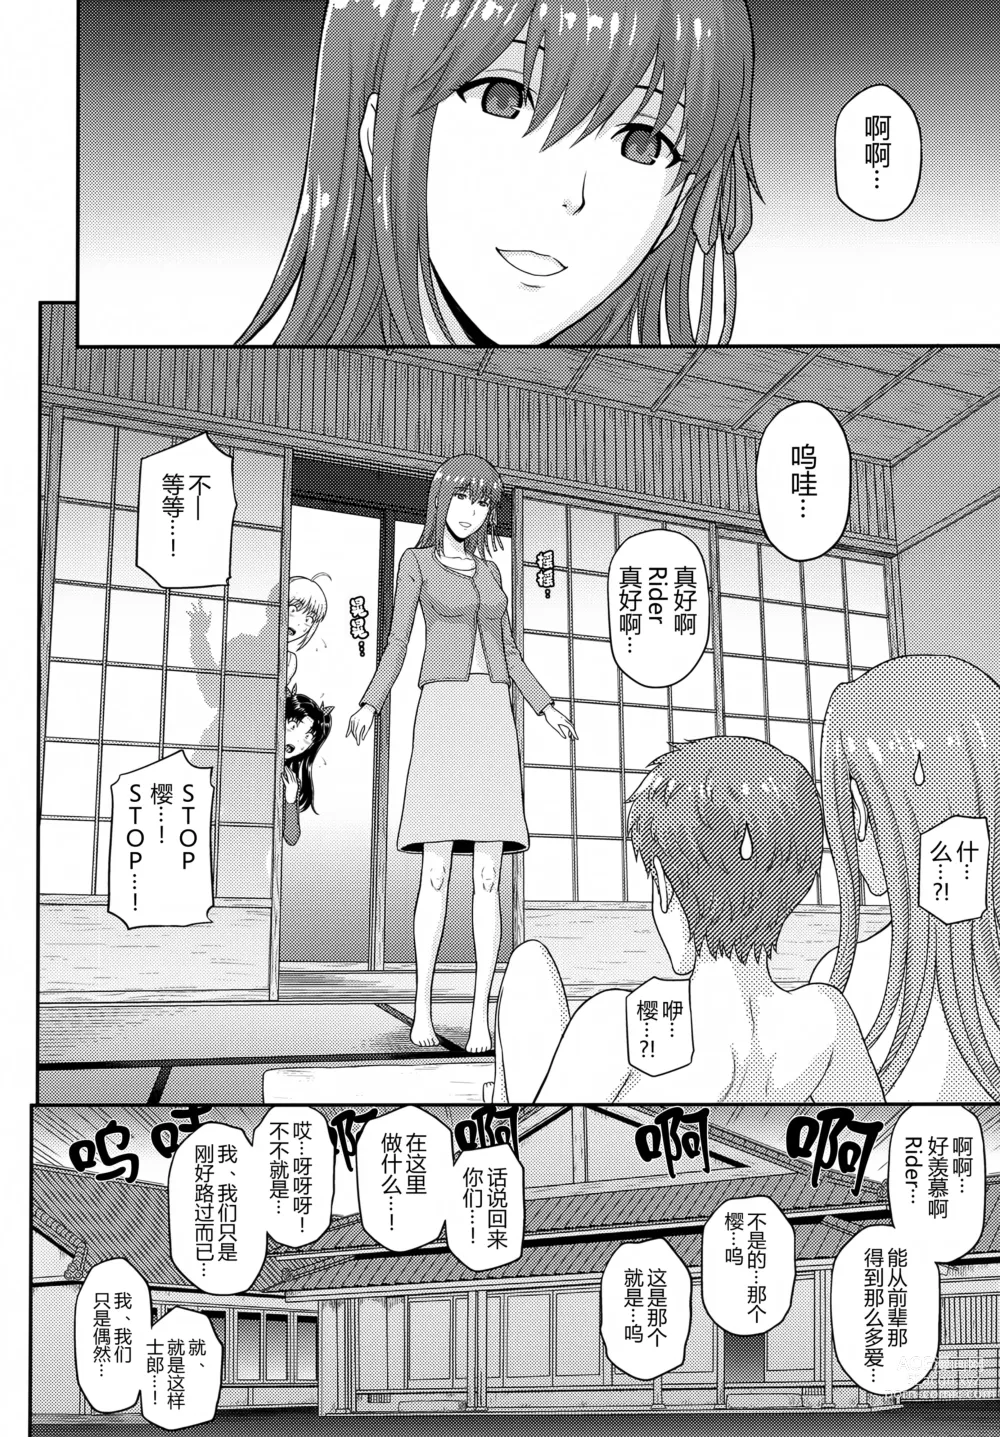 Page 20 of doujinshi Douka Kimi wa Shiawase ni